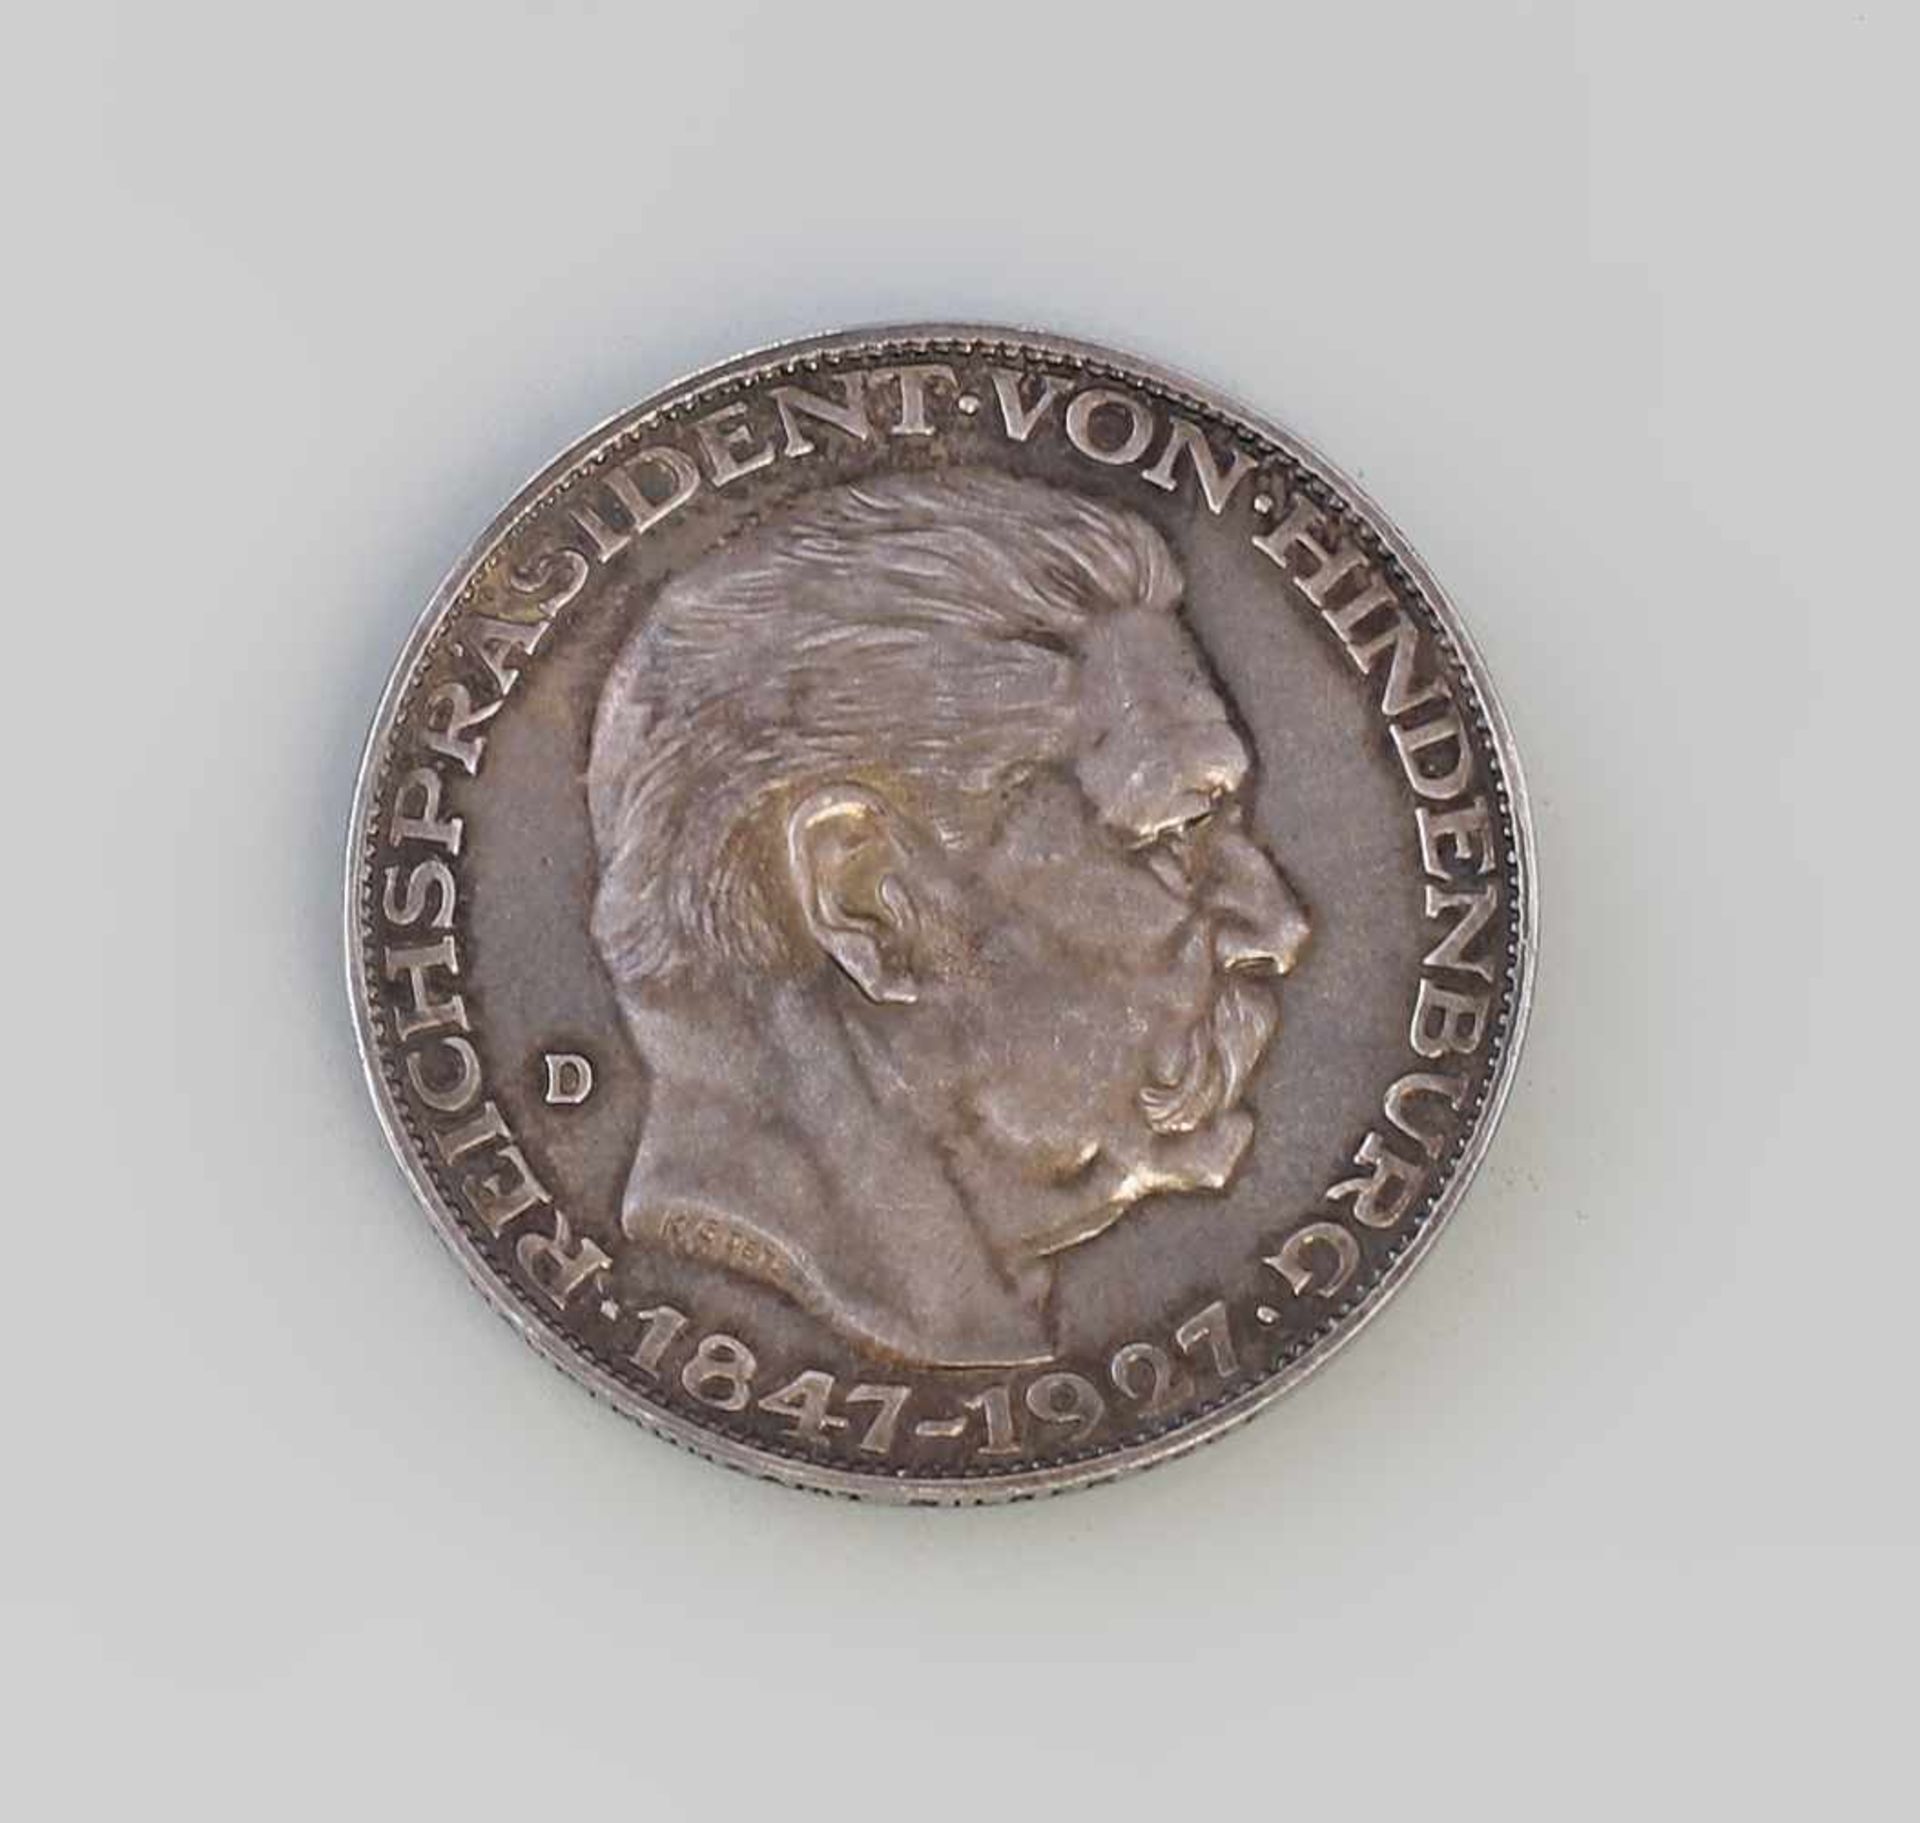 Silber-Medaille Reichspräsident Hindenburg 1847-1927 Vs Reichspräsident Von Hindenburg 1847-1927,